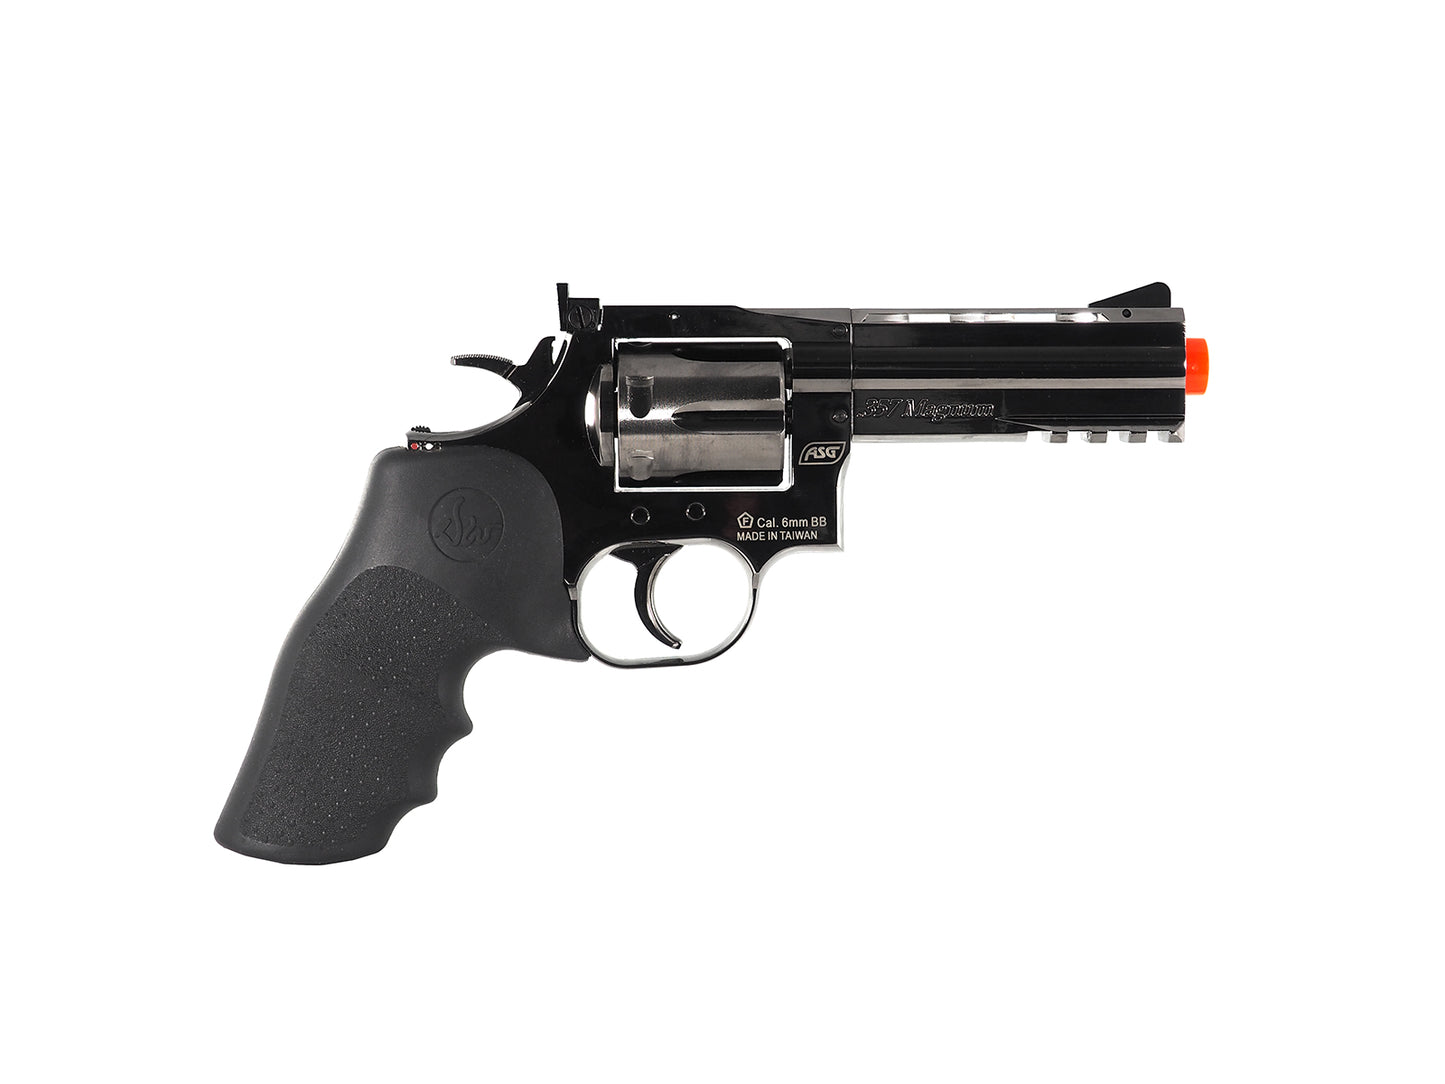 Dan Wesson 715 4" Steel Grey Revolver CO2